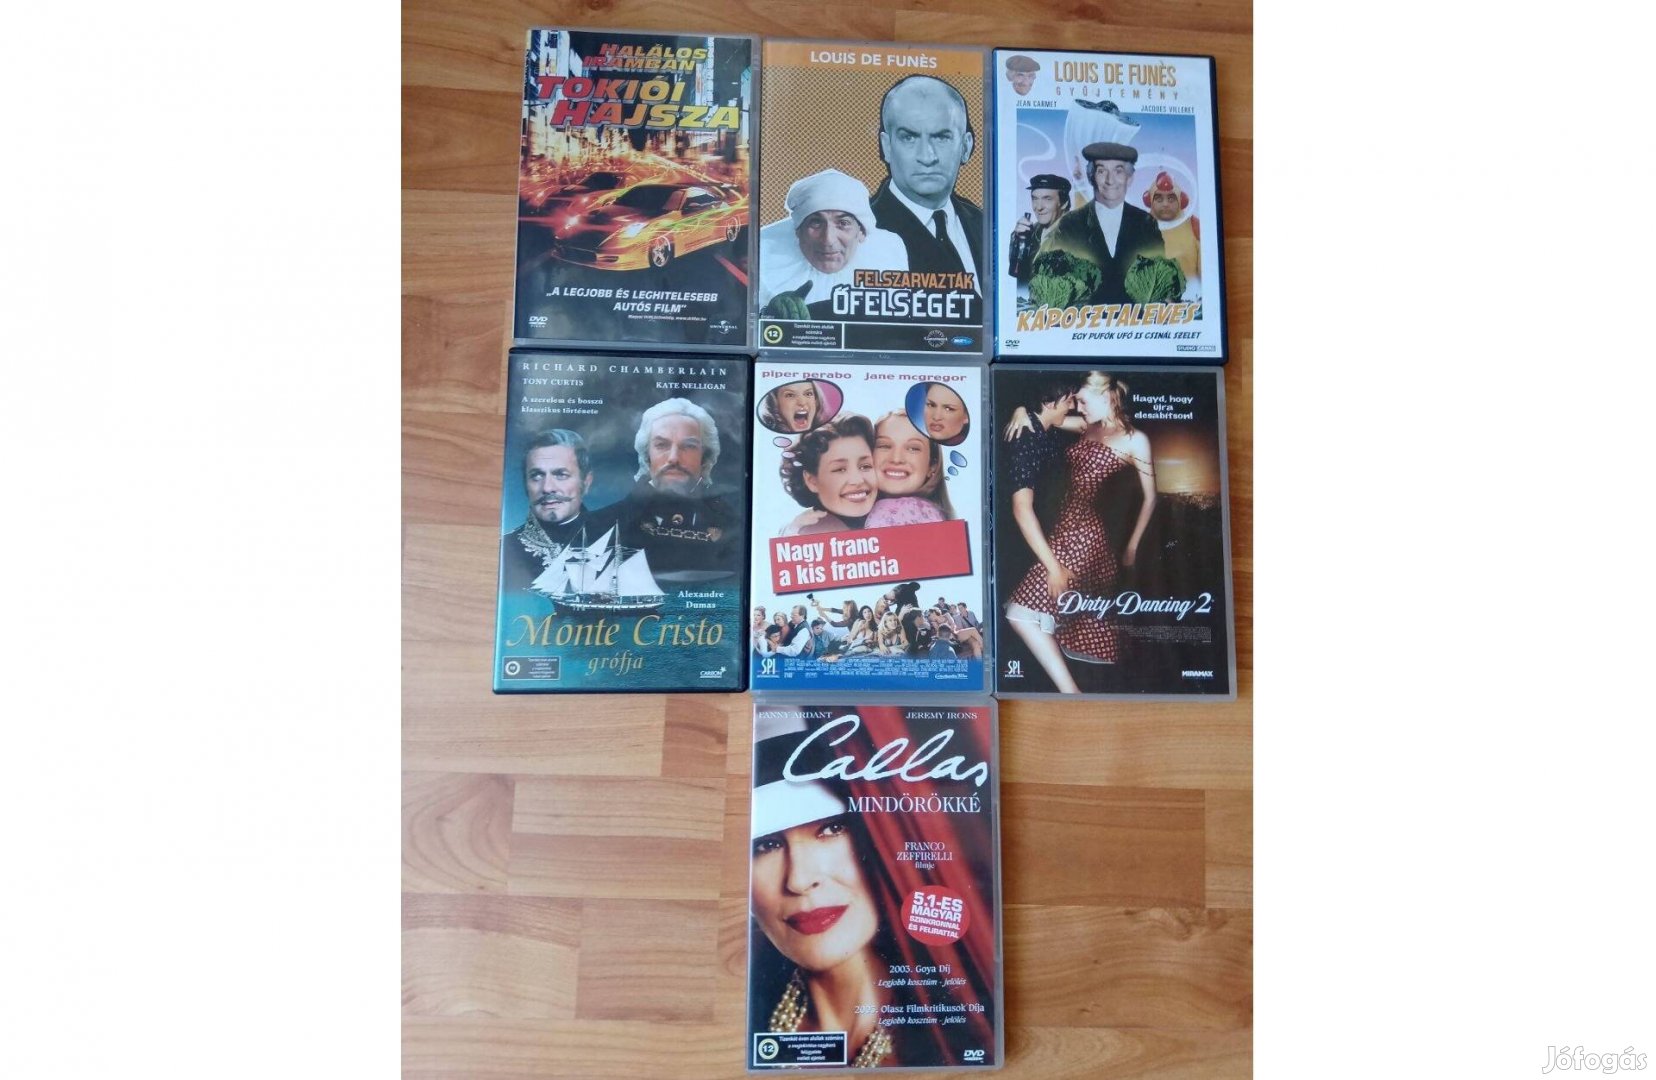 DVD filmek reklám áron